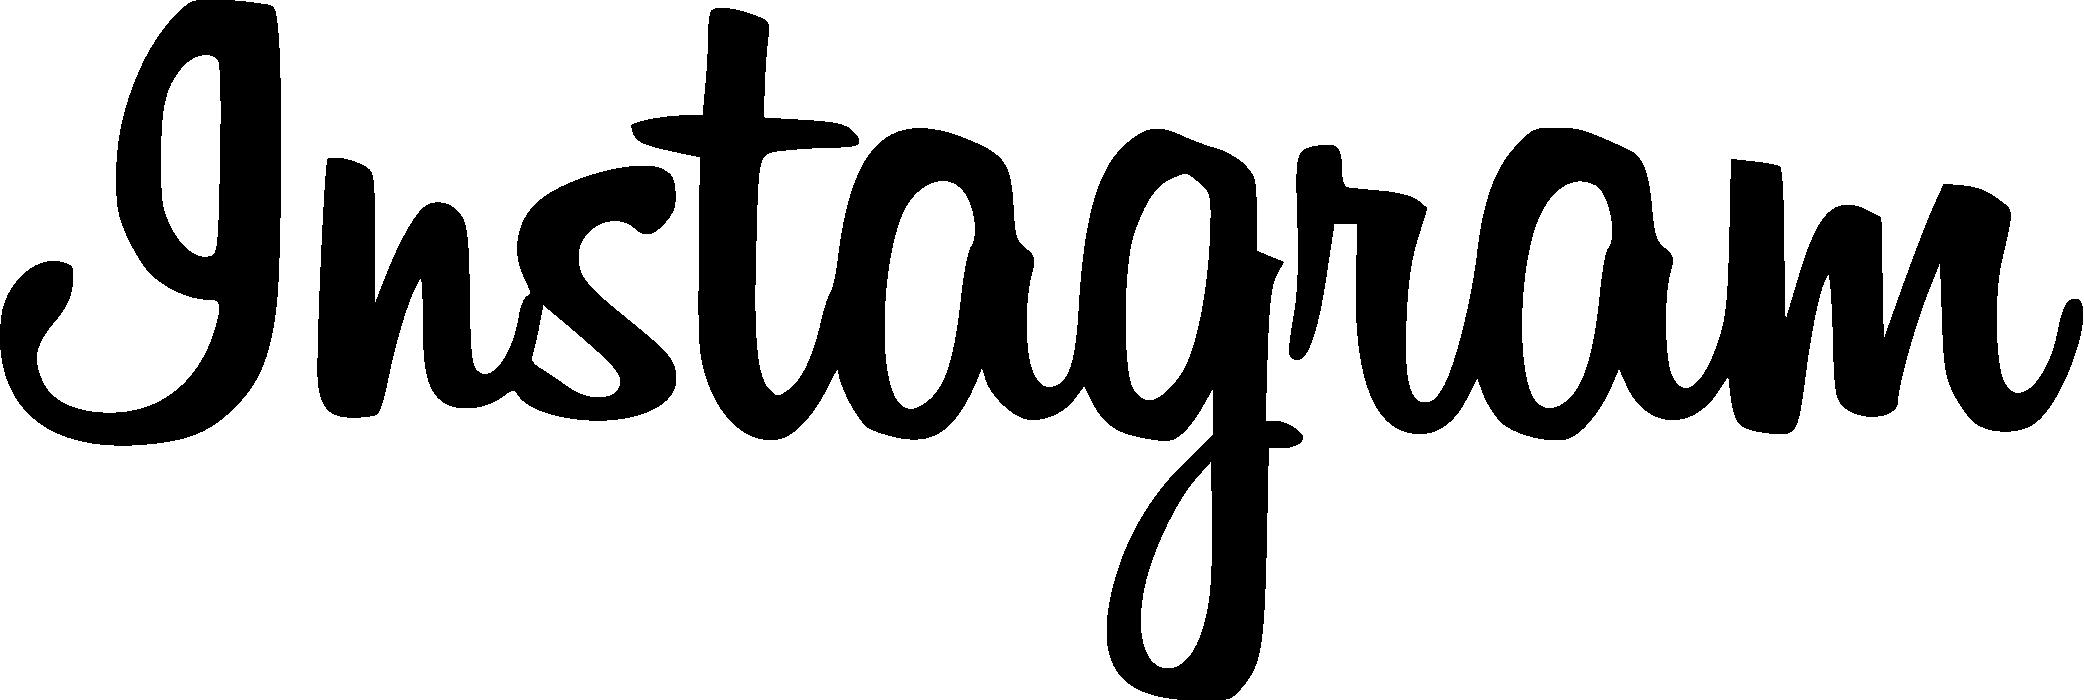 Nếu bạn đang muốn tìm kiếm các font chữ để thiết kế đẹp mắt cho tài khoản Instagram của mình, thì đừng bỏ lỡ Instagram Script Typeface Download của chúng tôi. Đây là font chữ đẹp và mang tính cách riêng, sẽ giúp tài khoản Instagram của bạn nổi bật hơn và thu hút nhiều người quan tâm hơn.